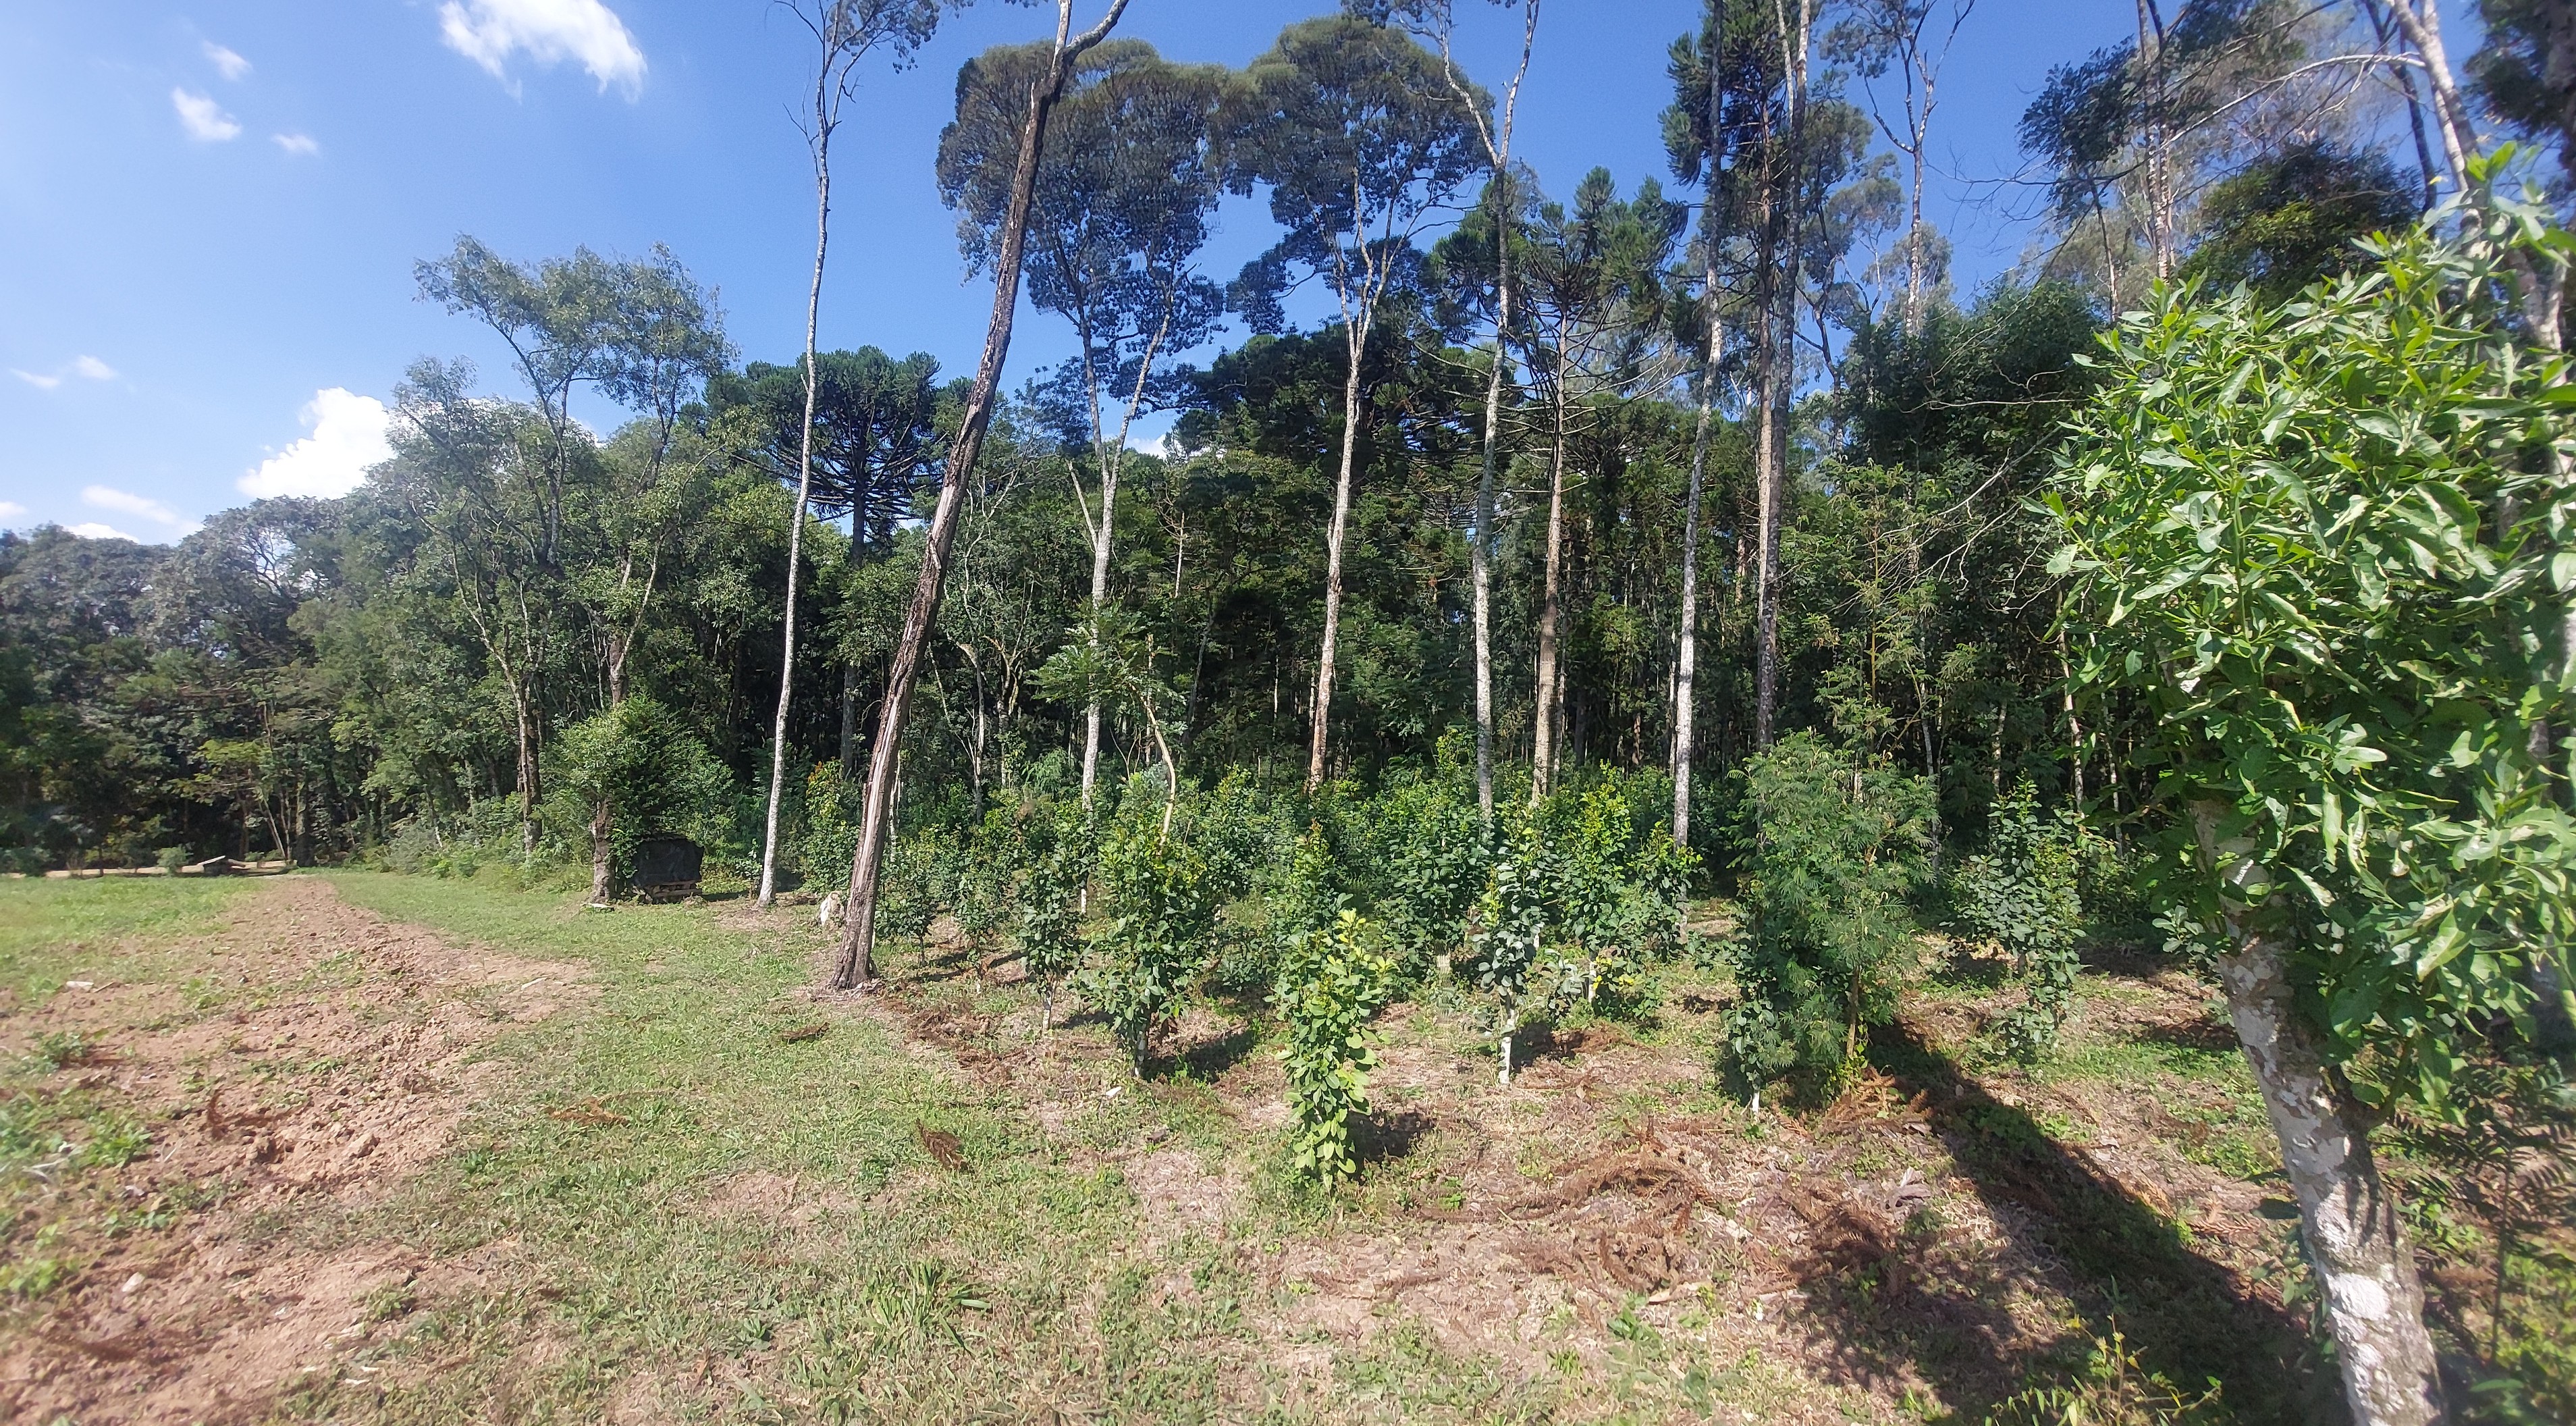 Imagem doTerreno Rural com 3.6 hectares de terra de planta no Bairro Piedade